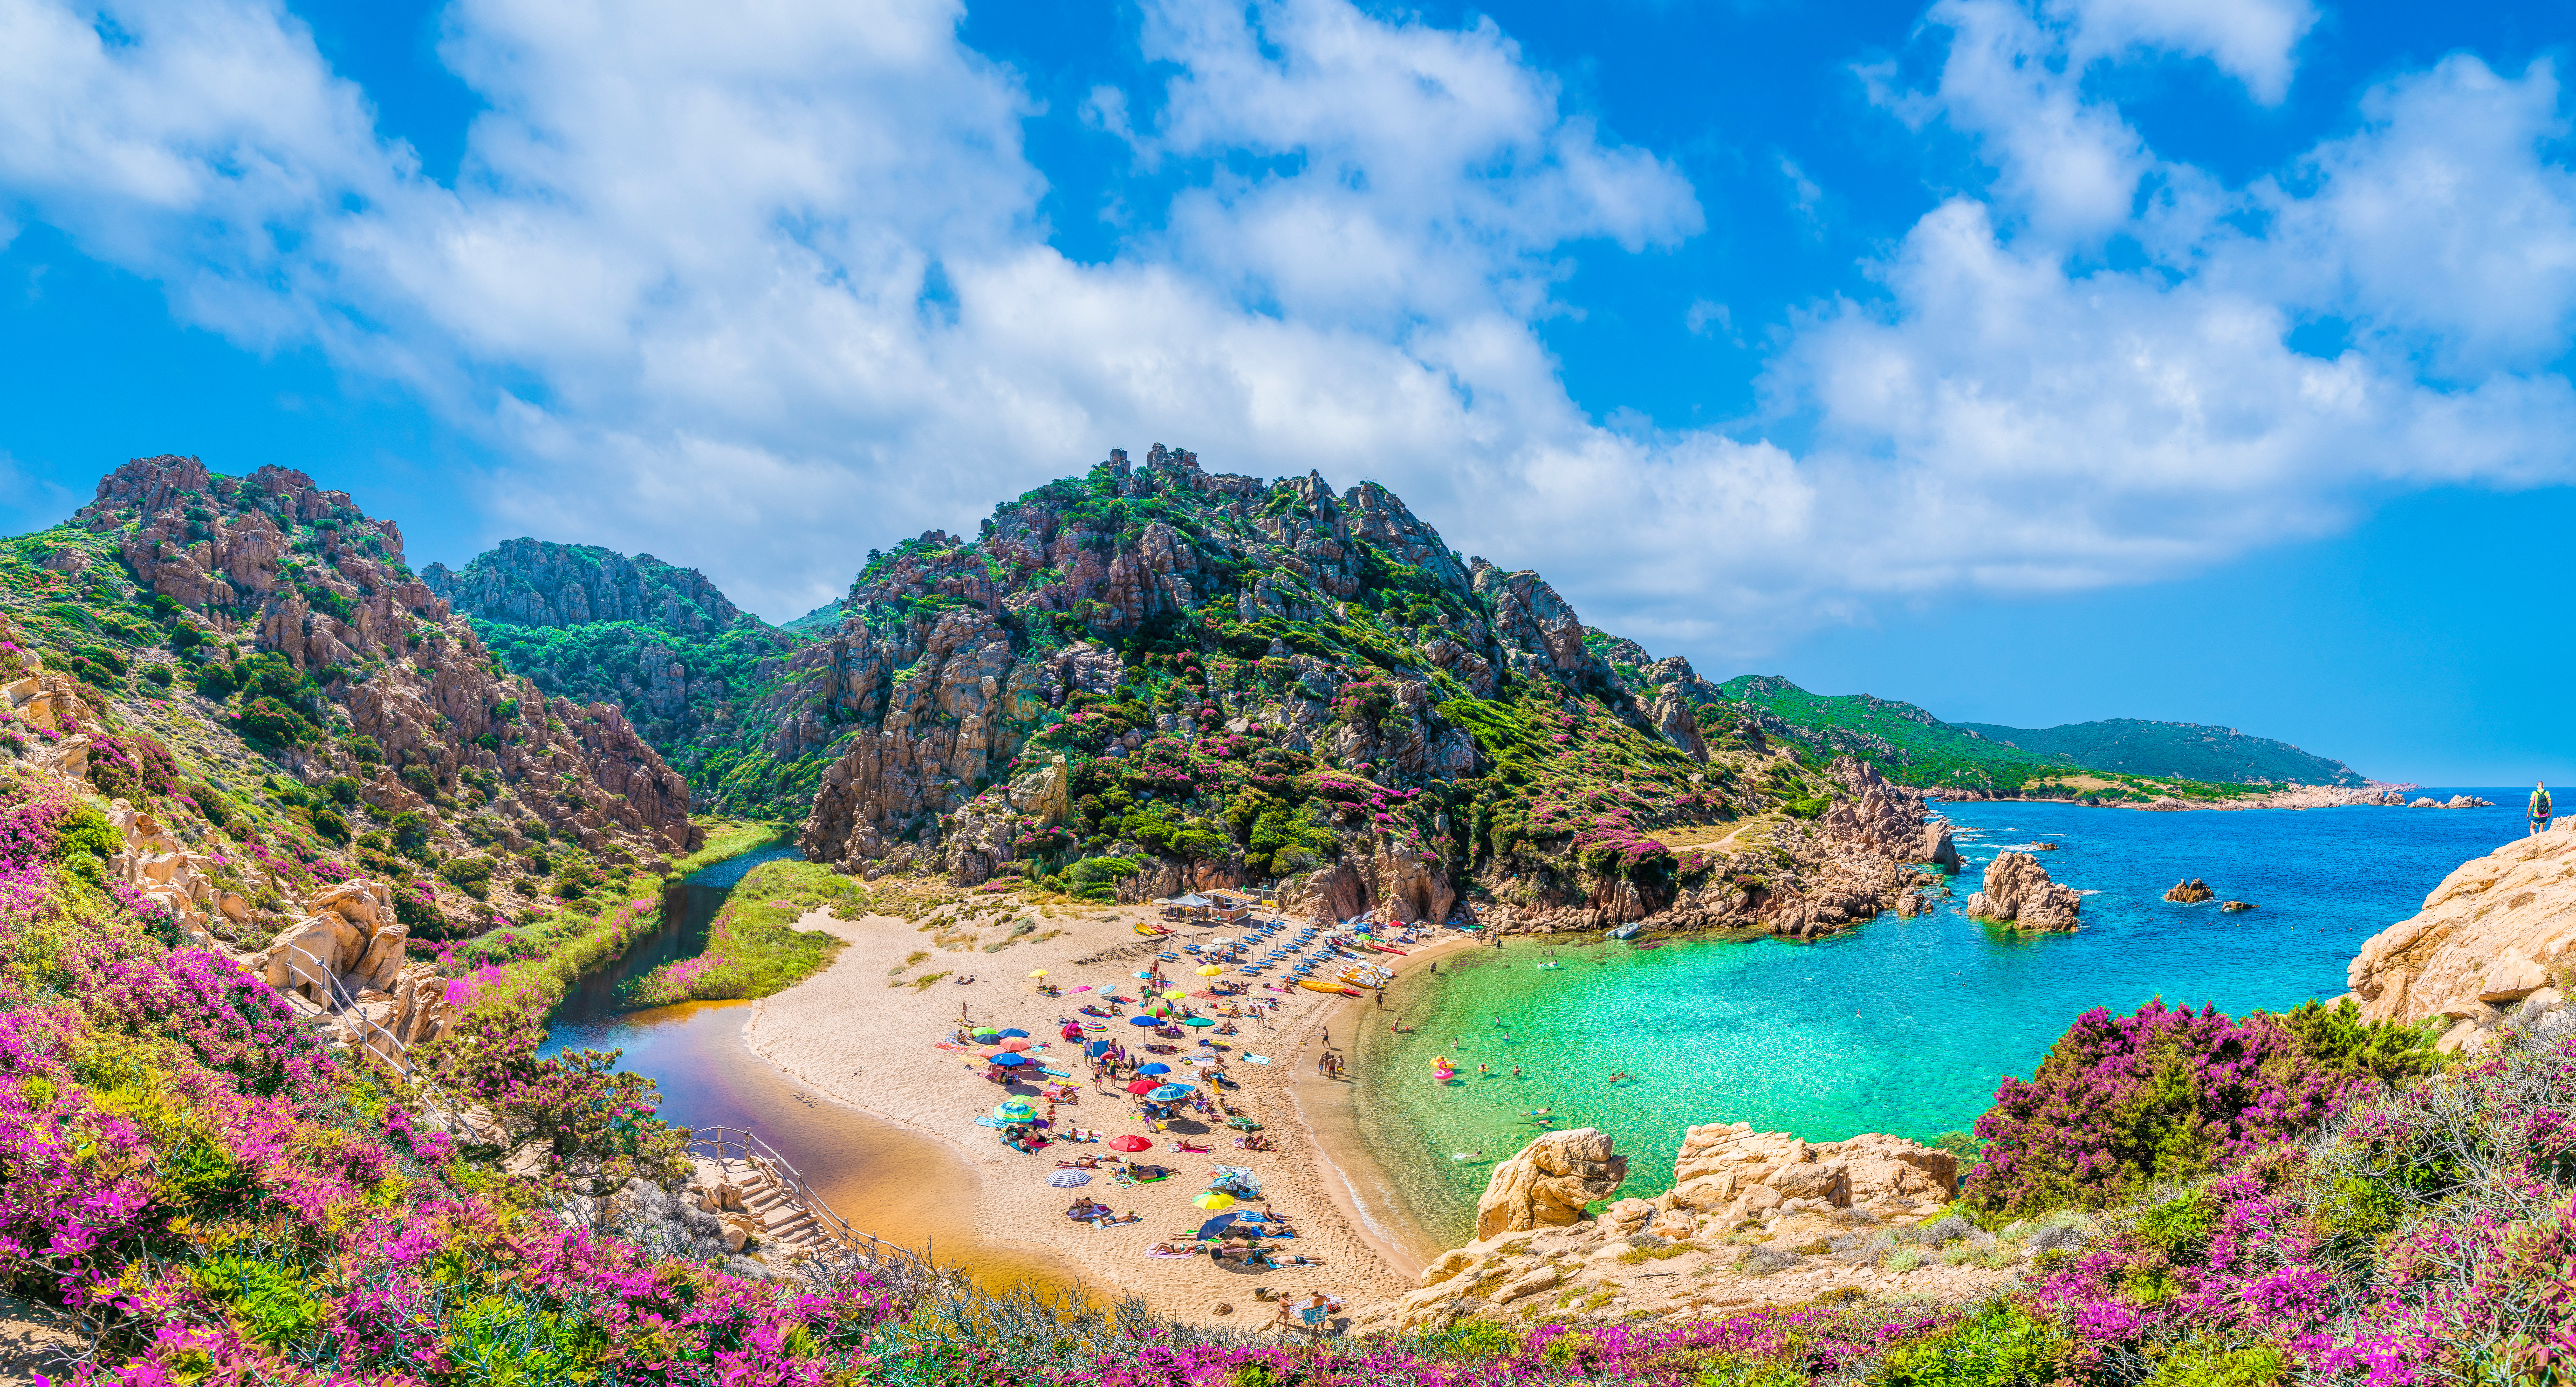 Panoramablick auf einen Strand auf Sardinien, der Strand mit vielen Menschen mit Sonnenschirmen liegt am türkisen Meer, um den Strand herum sind felsige Hügel mit violetten Blumen und Felsformationen